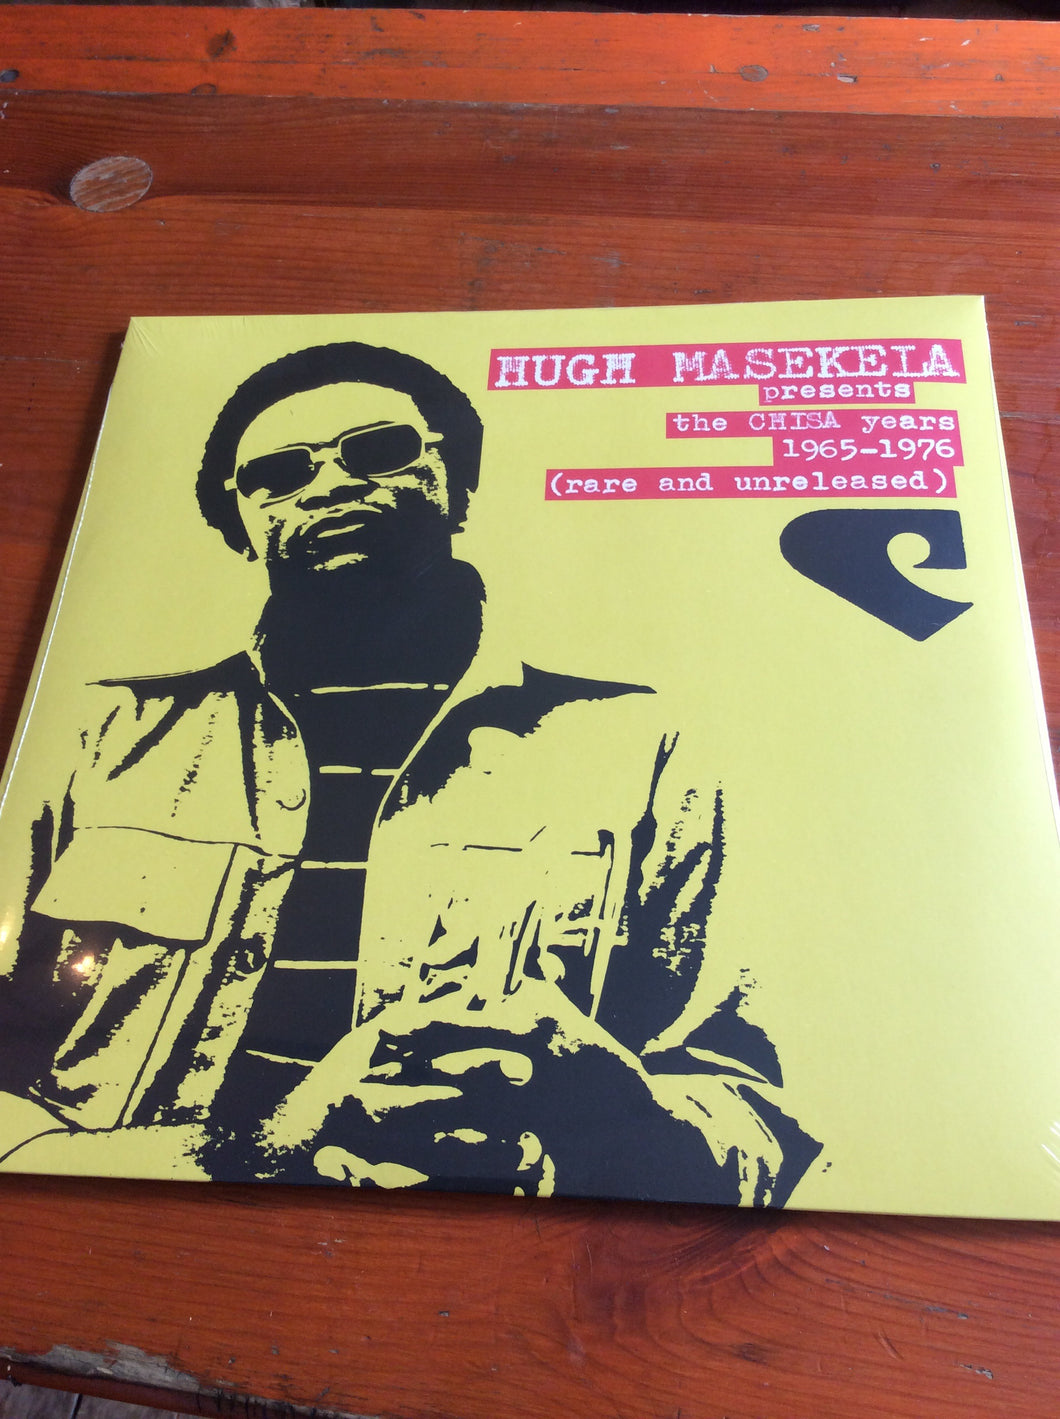 Hugh Masekela - The Chisa Years 1965-1976